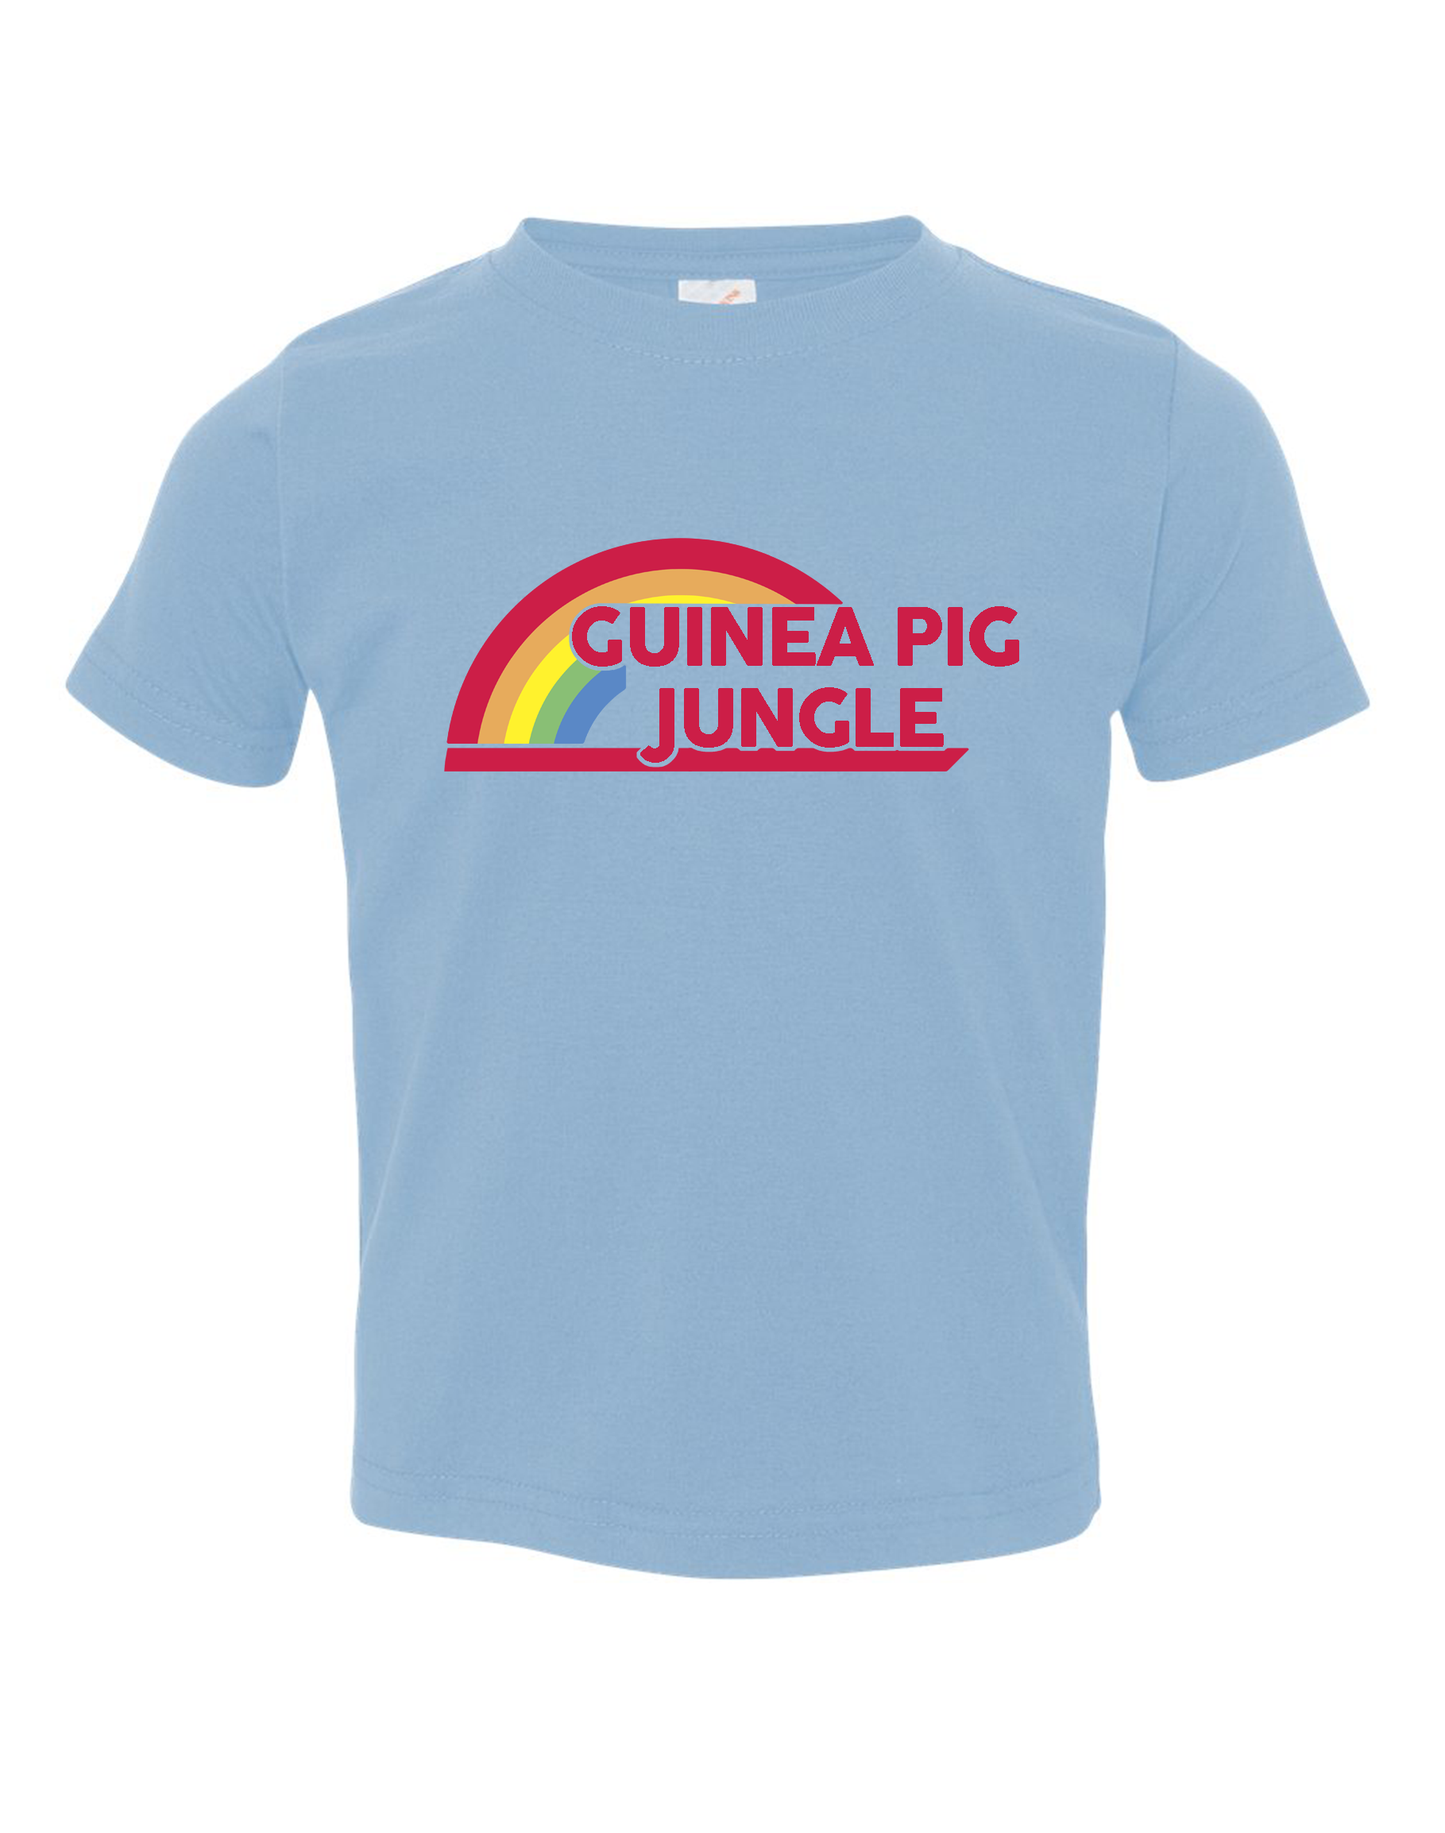 Guinea Pig Rainbow Toddler T-Shirt : Guinea Pig Jungle Shirt